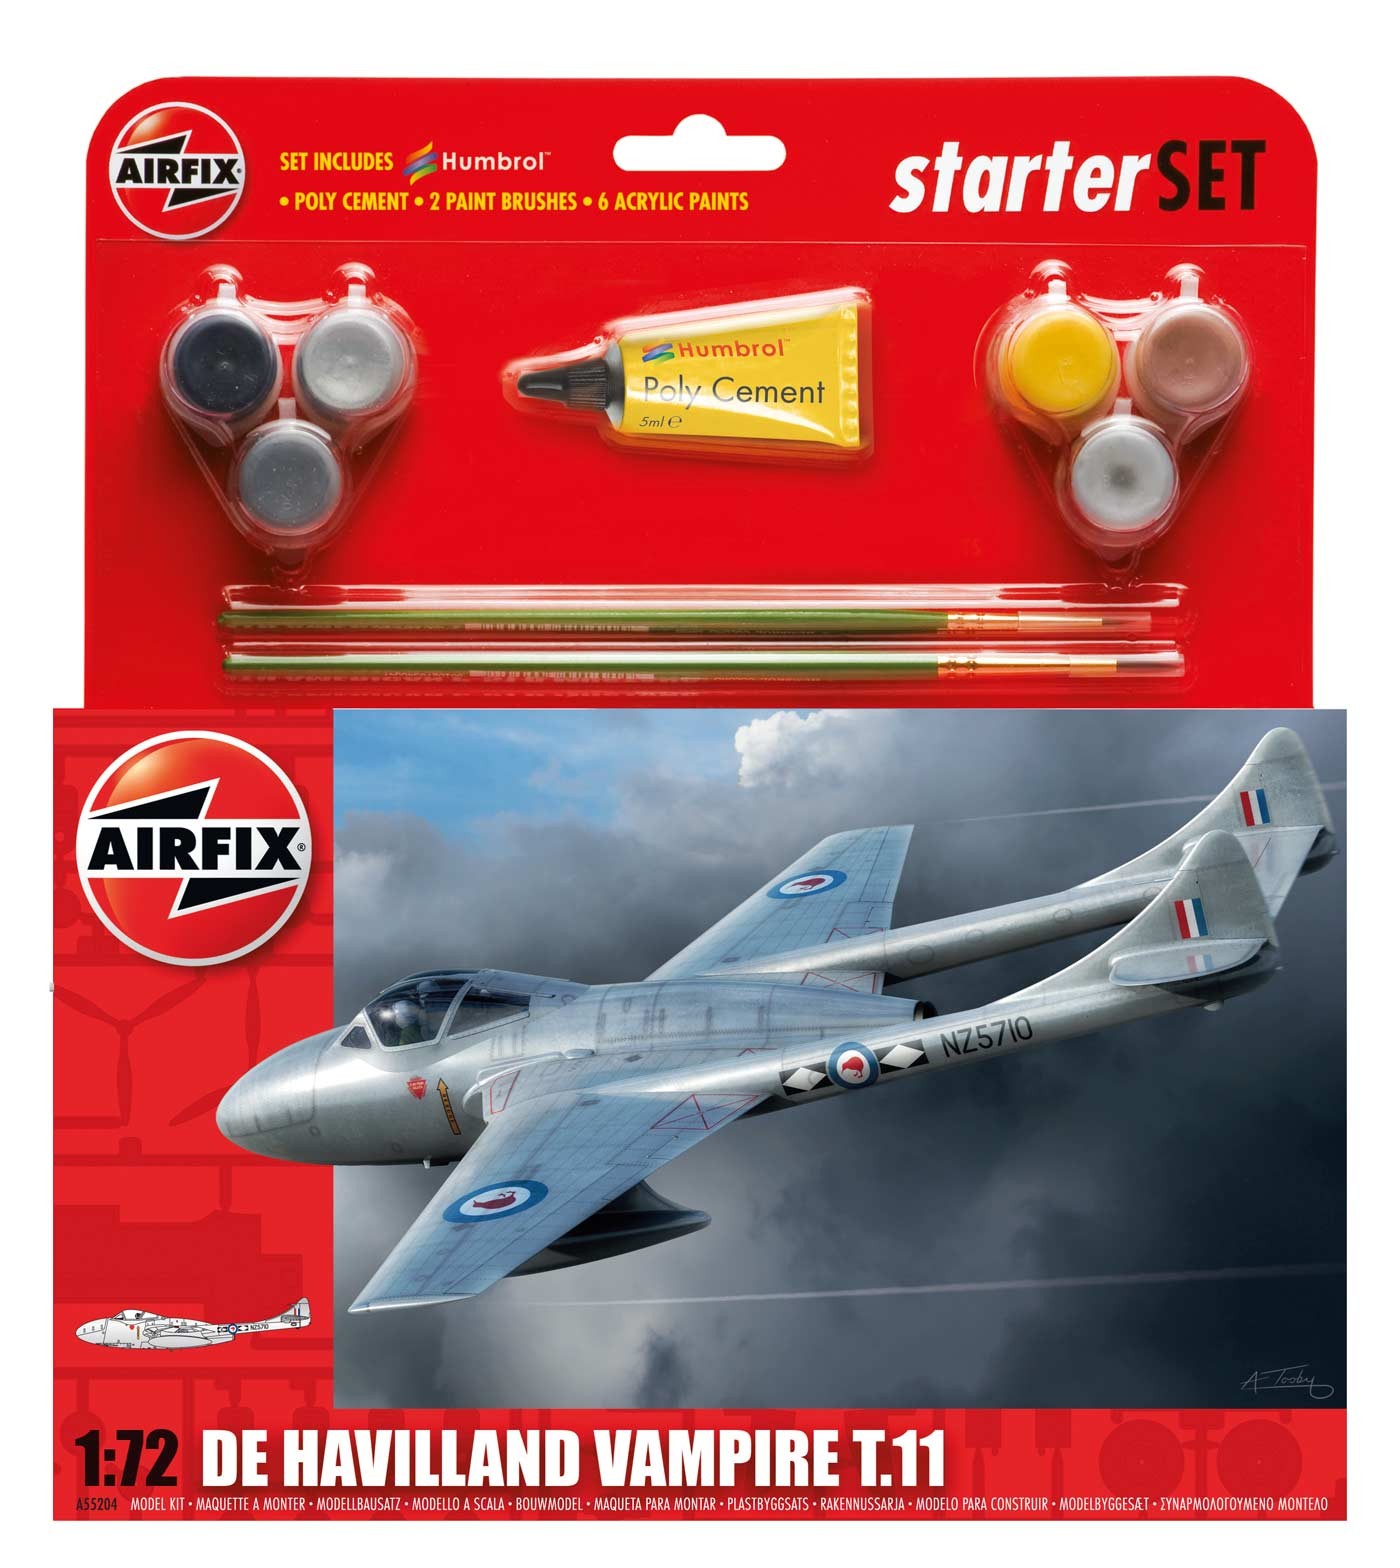 Airfix DH Vampire TII Starter Set in 1:72 bouwpakket met lijm en verf